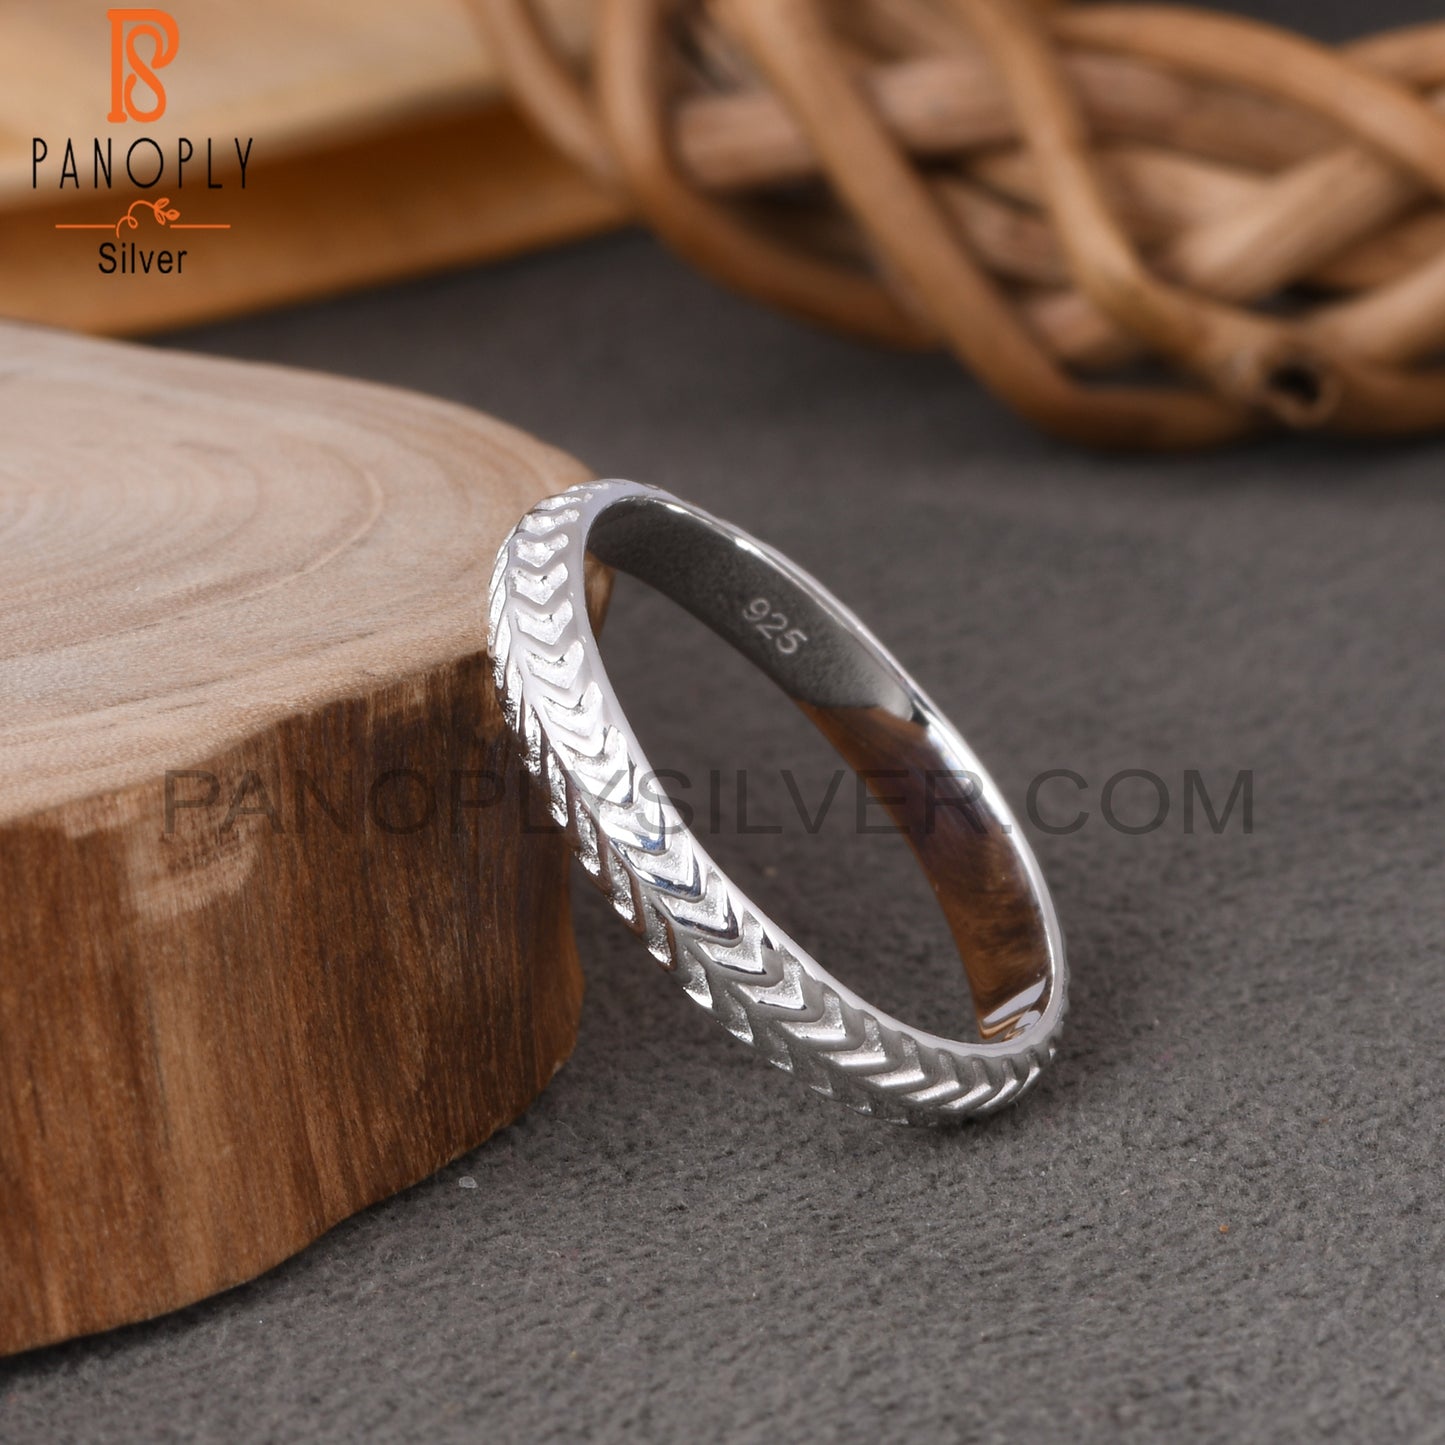 Plain 925 Sterling Silver Ring, Finger Ring